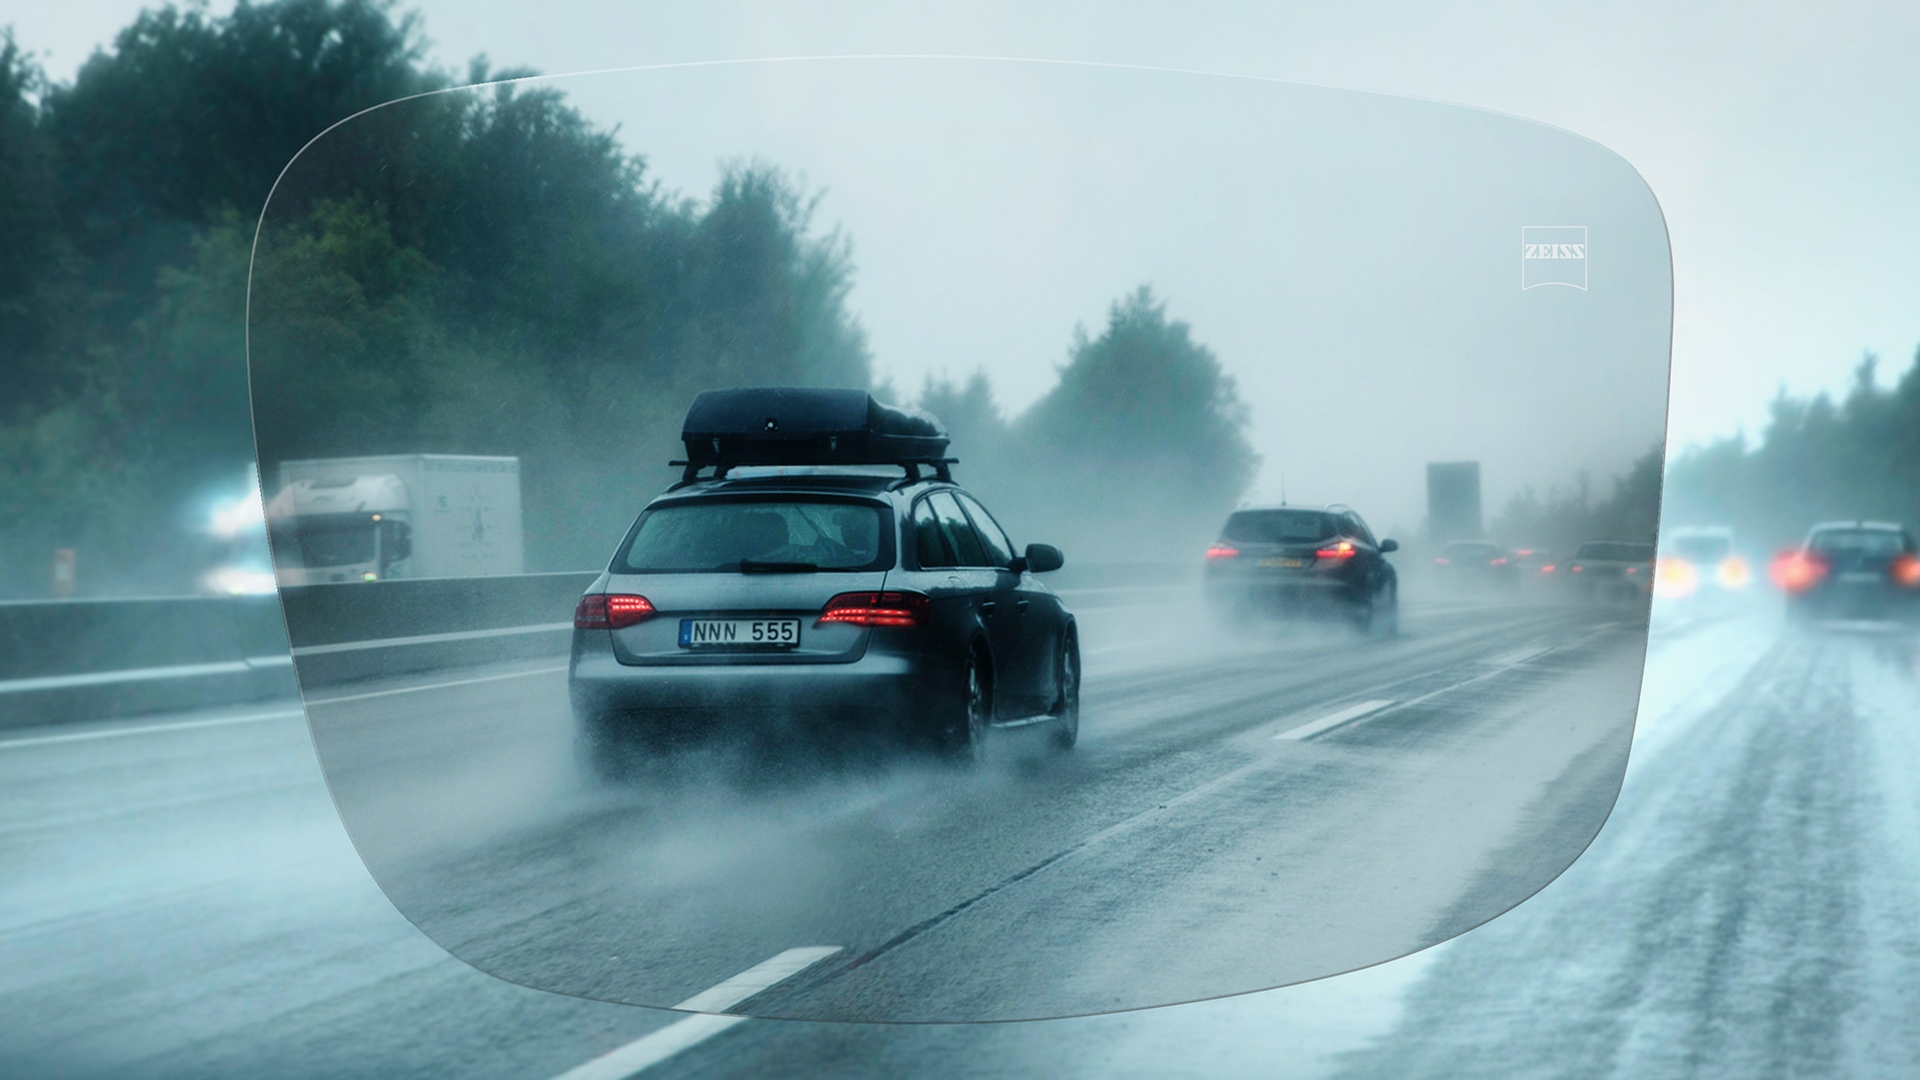 Podívejte se přes jednoohniskové brýlové čočky ZEISS DriveSafe na deštivou dálnici. 